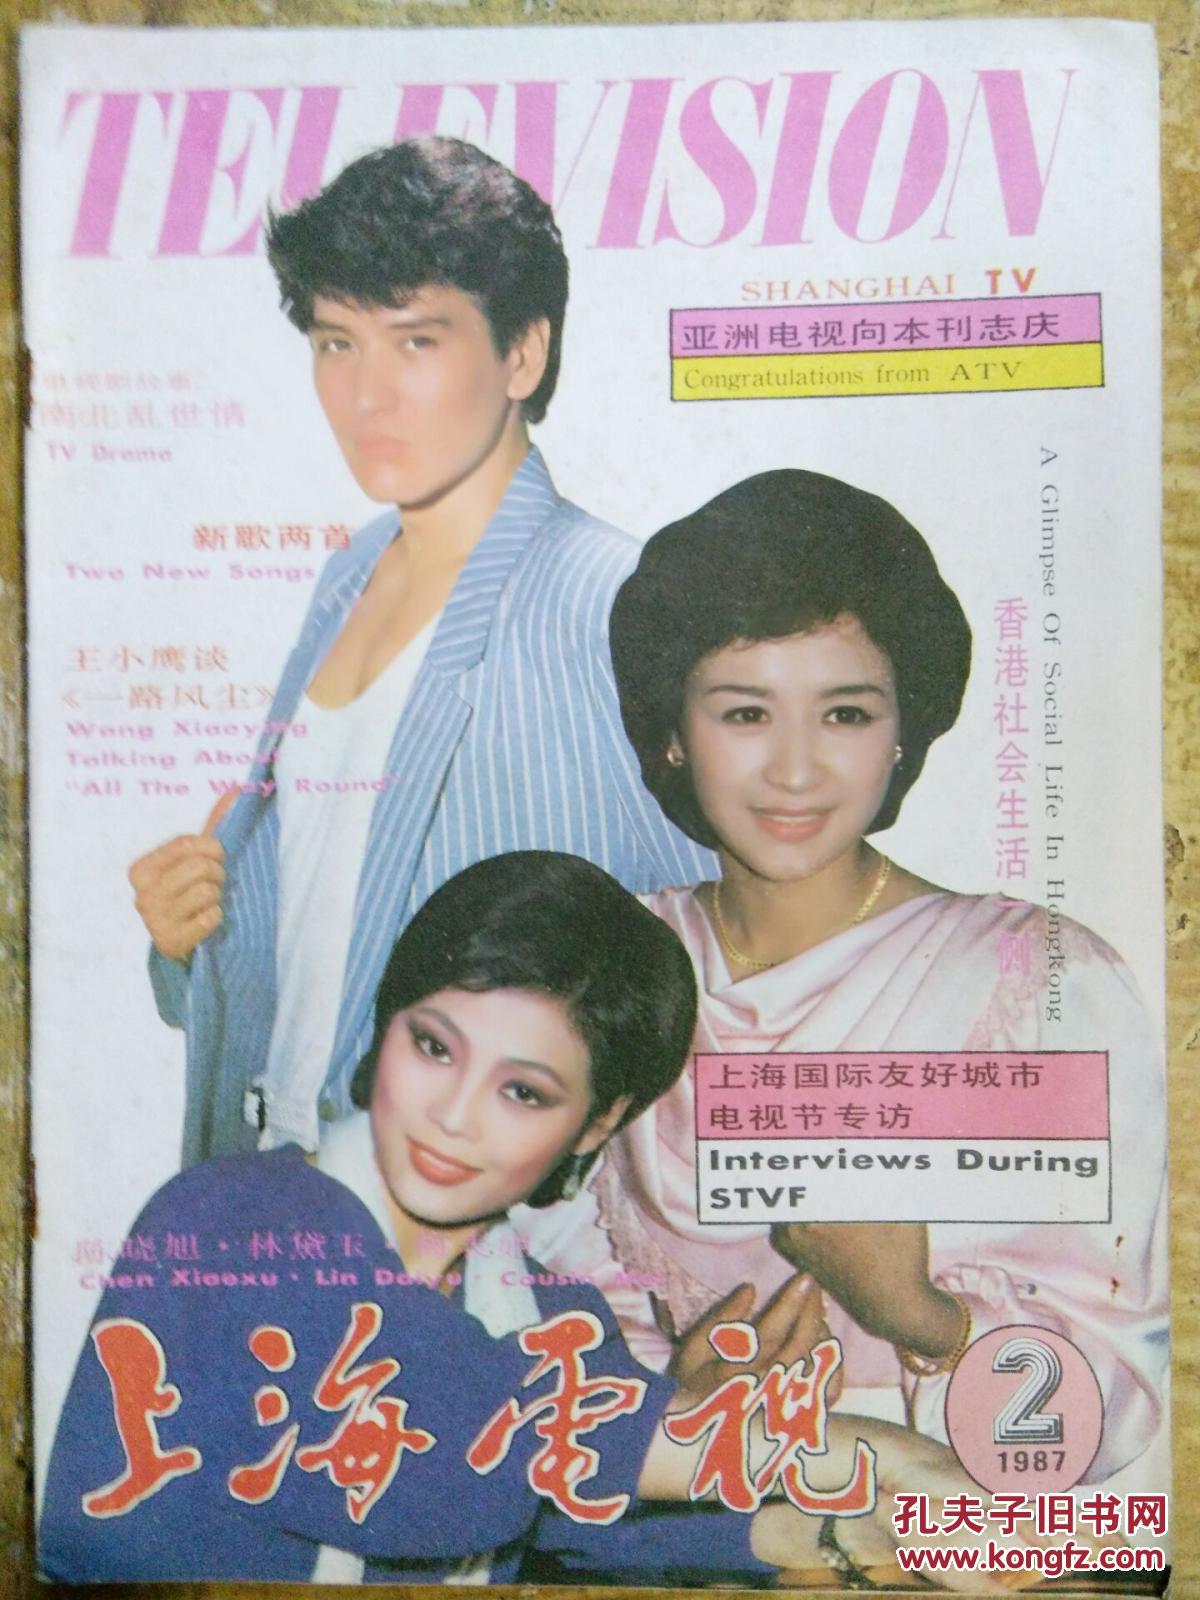 【上海电视(1987年第2期)】中国电视史上的一